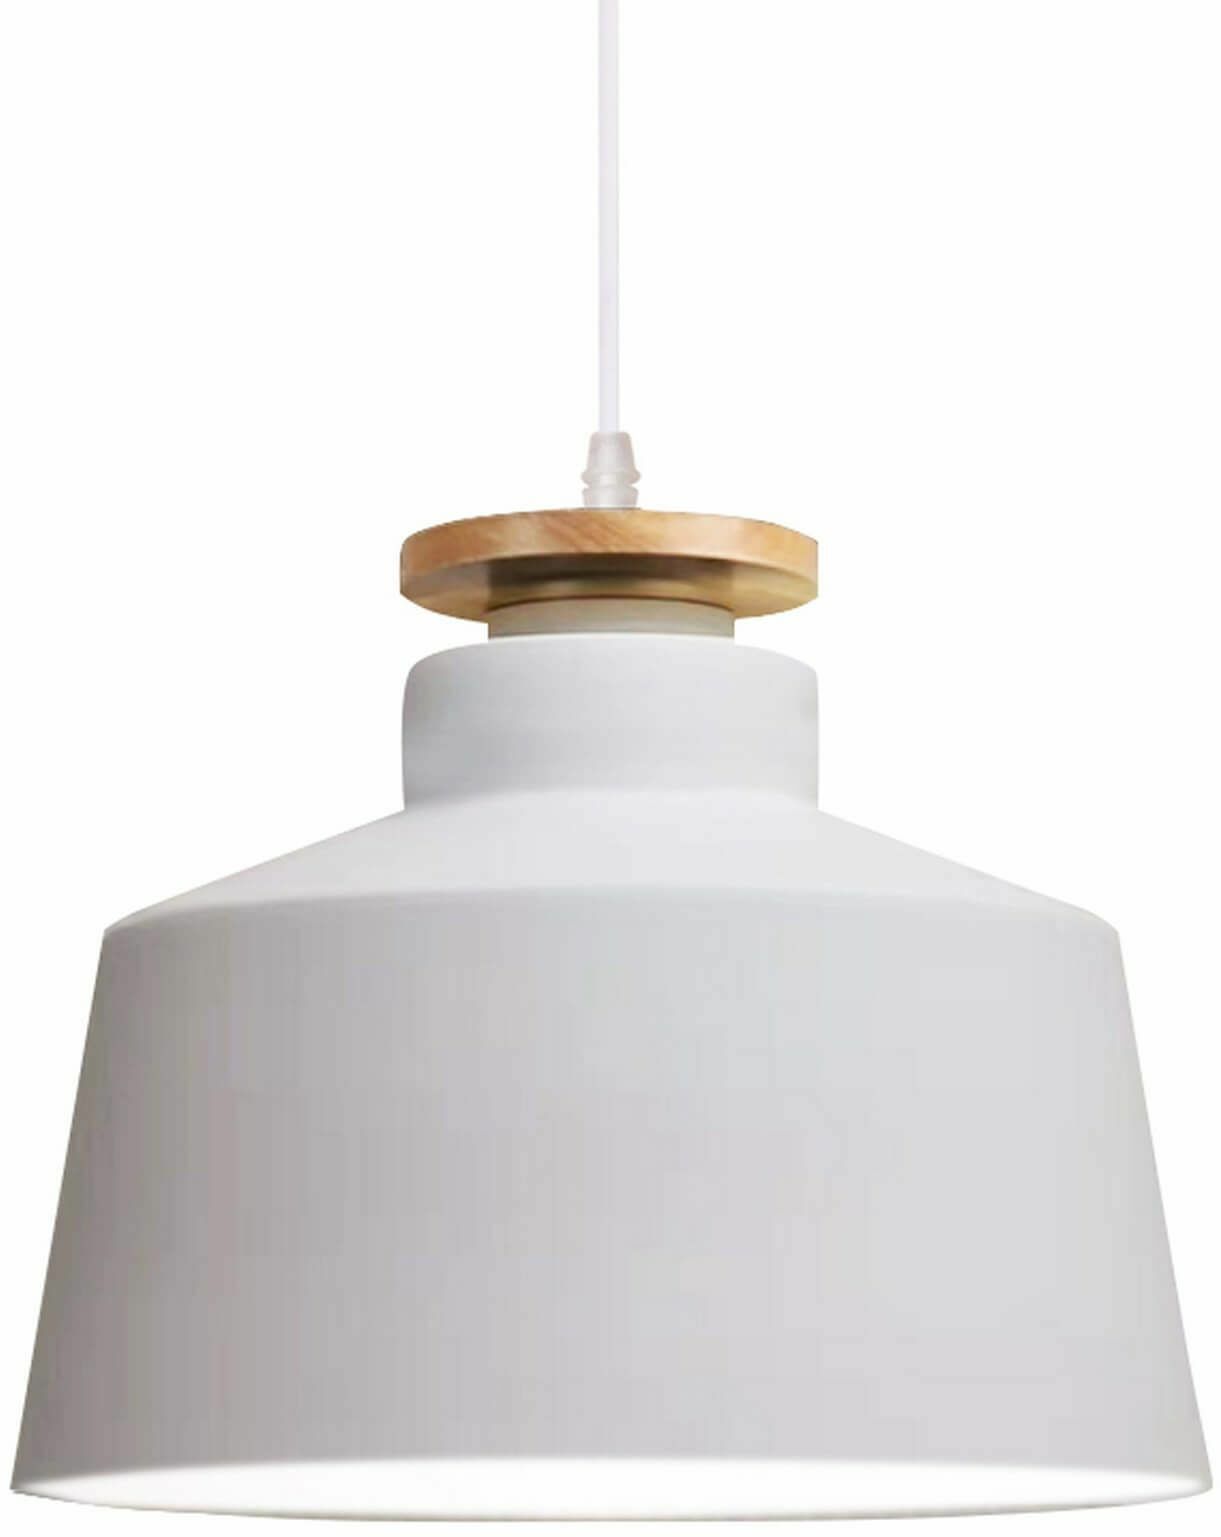 Levanti nowoczesna lampa biała z drewnem LDP 7974-300 (WT) Lumina Deco // Rabaty w koszyku i darmowa dostawa od 299zł !